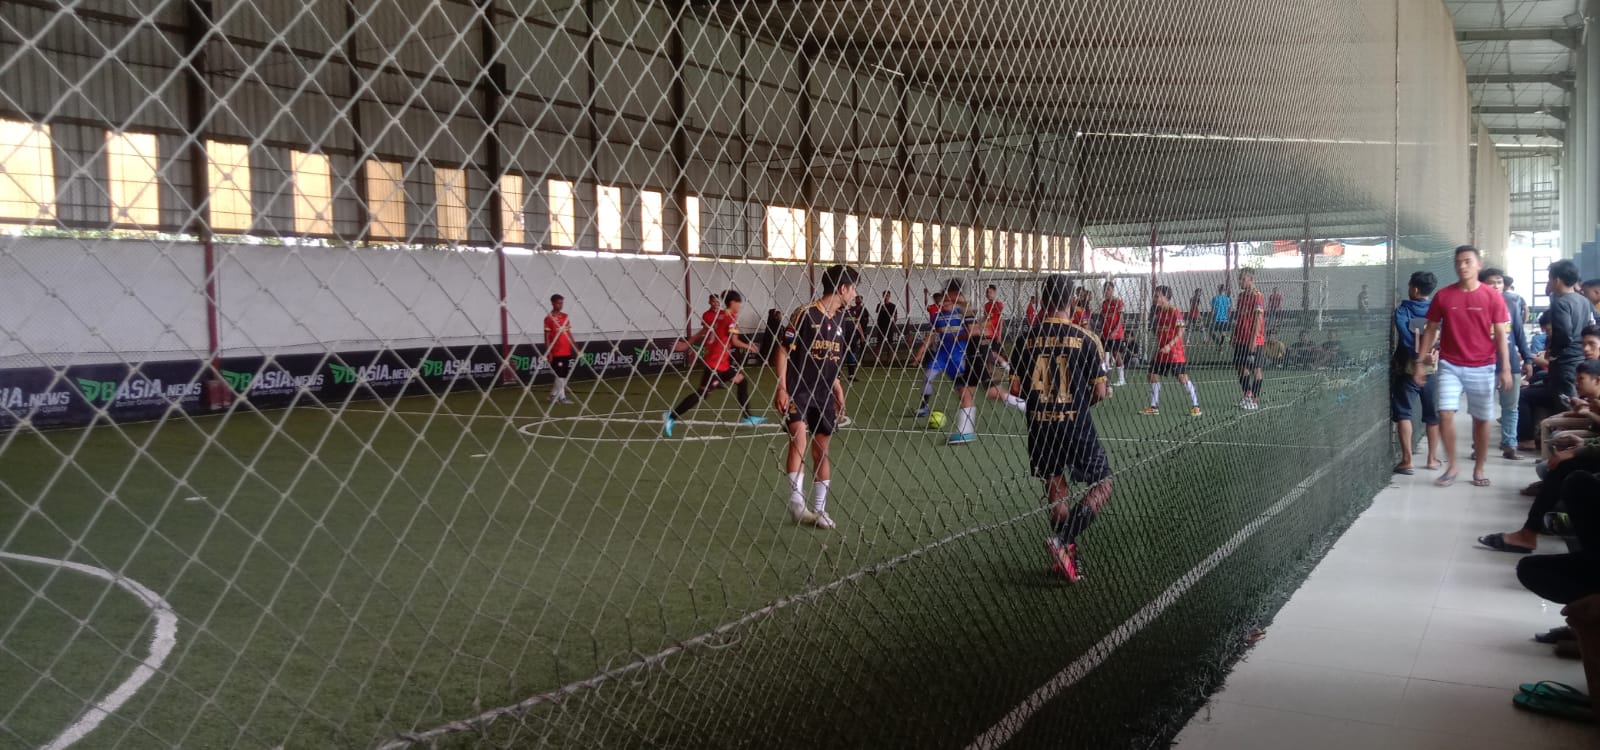 Turnamen Futsal Bapera Cup 1 resmi dibuka. Foto: Erf